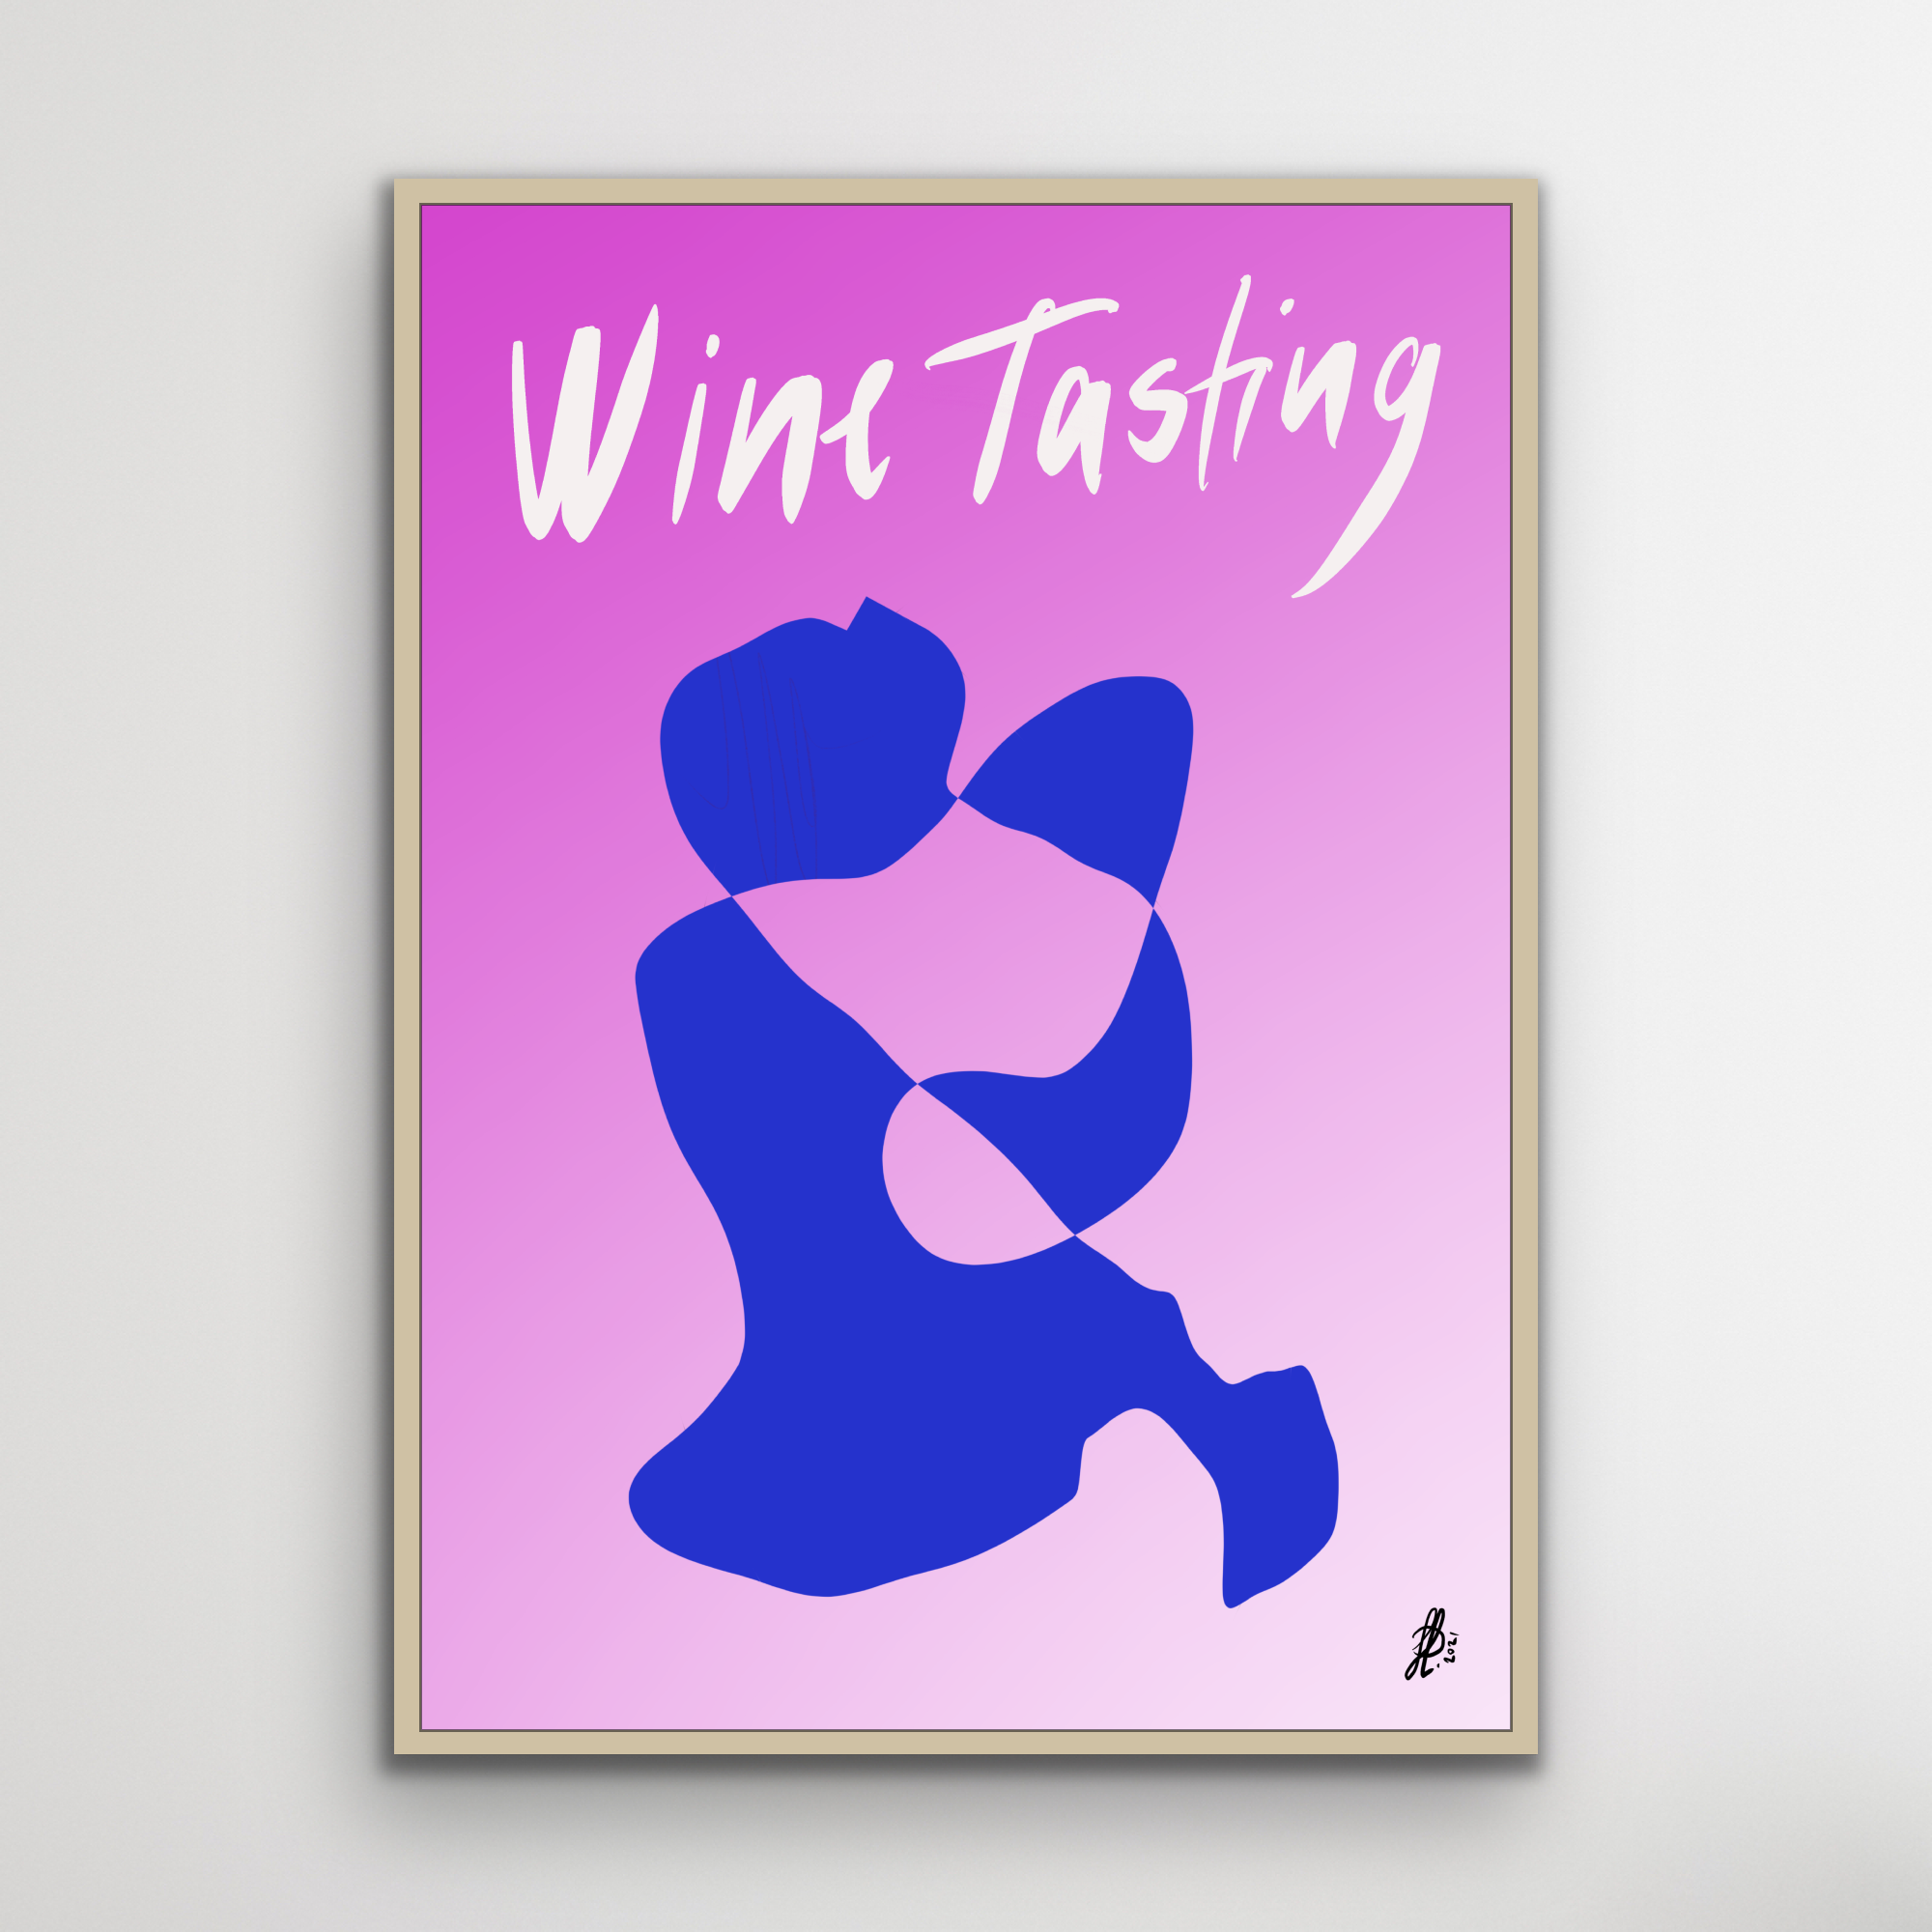 Plakat: "Wine Tasting #2"